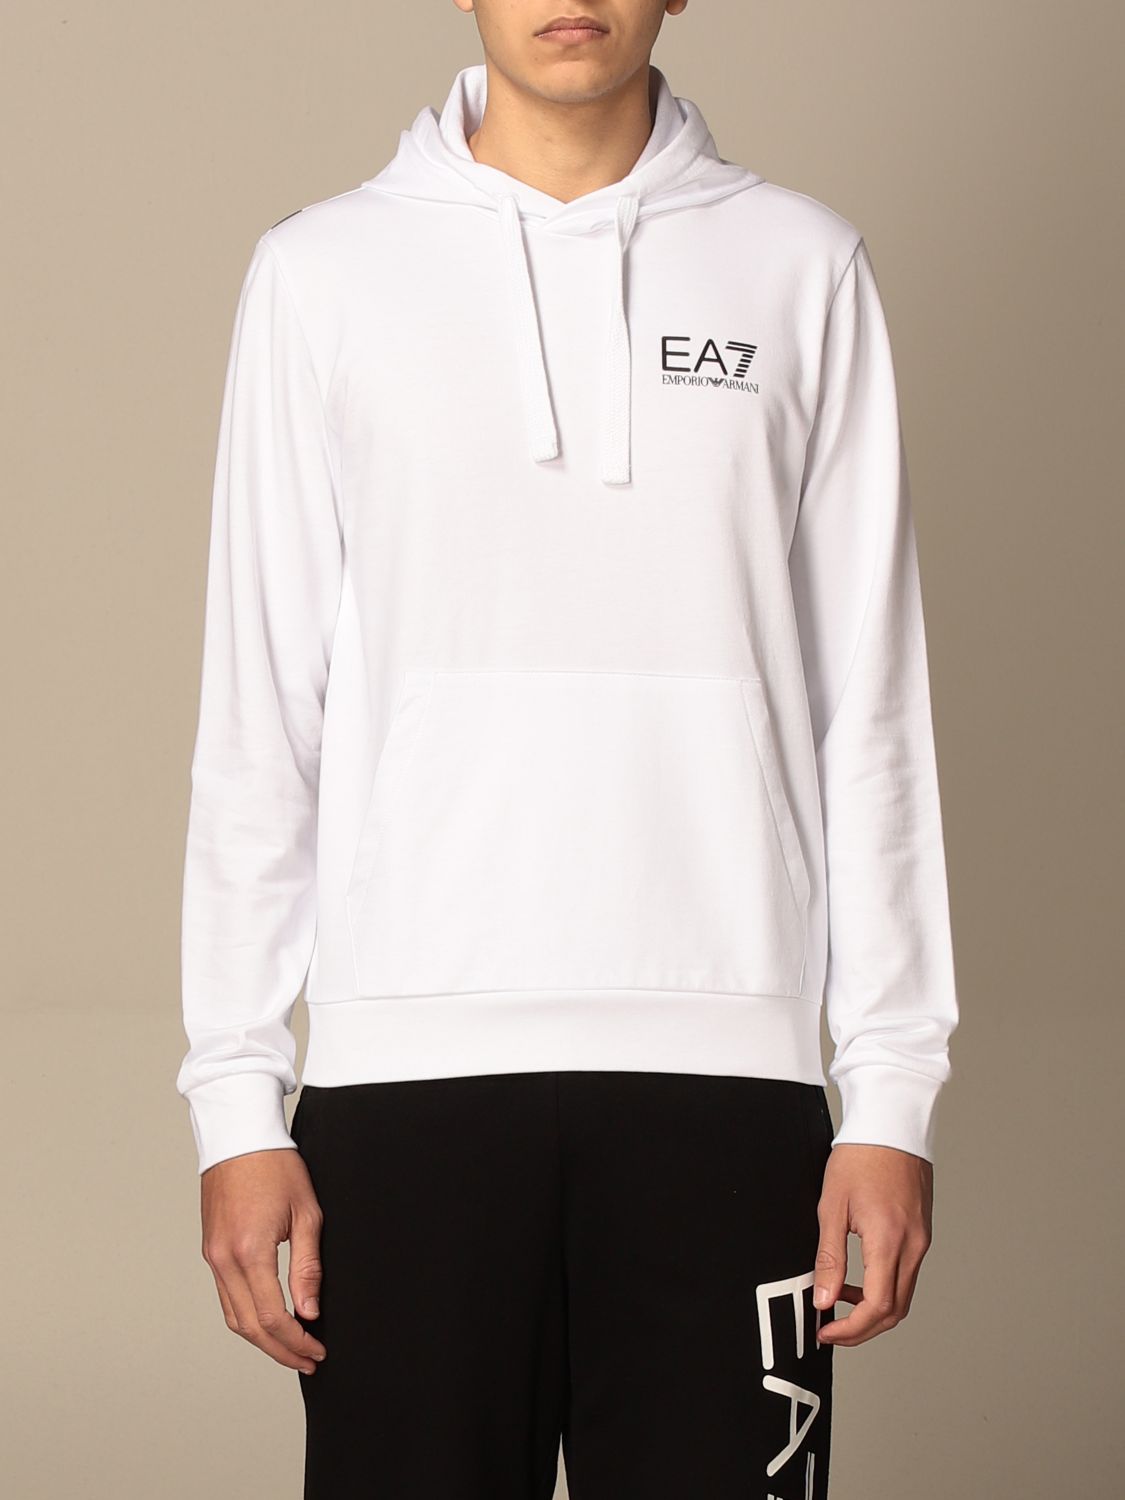 EA7: sweatshirt with hood and logo - White | Ea7 sweatshirt 3KPM31 ...